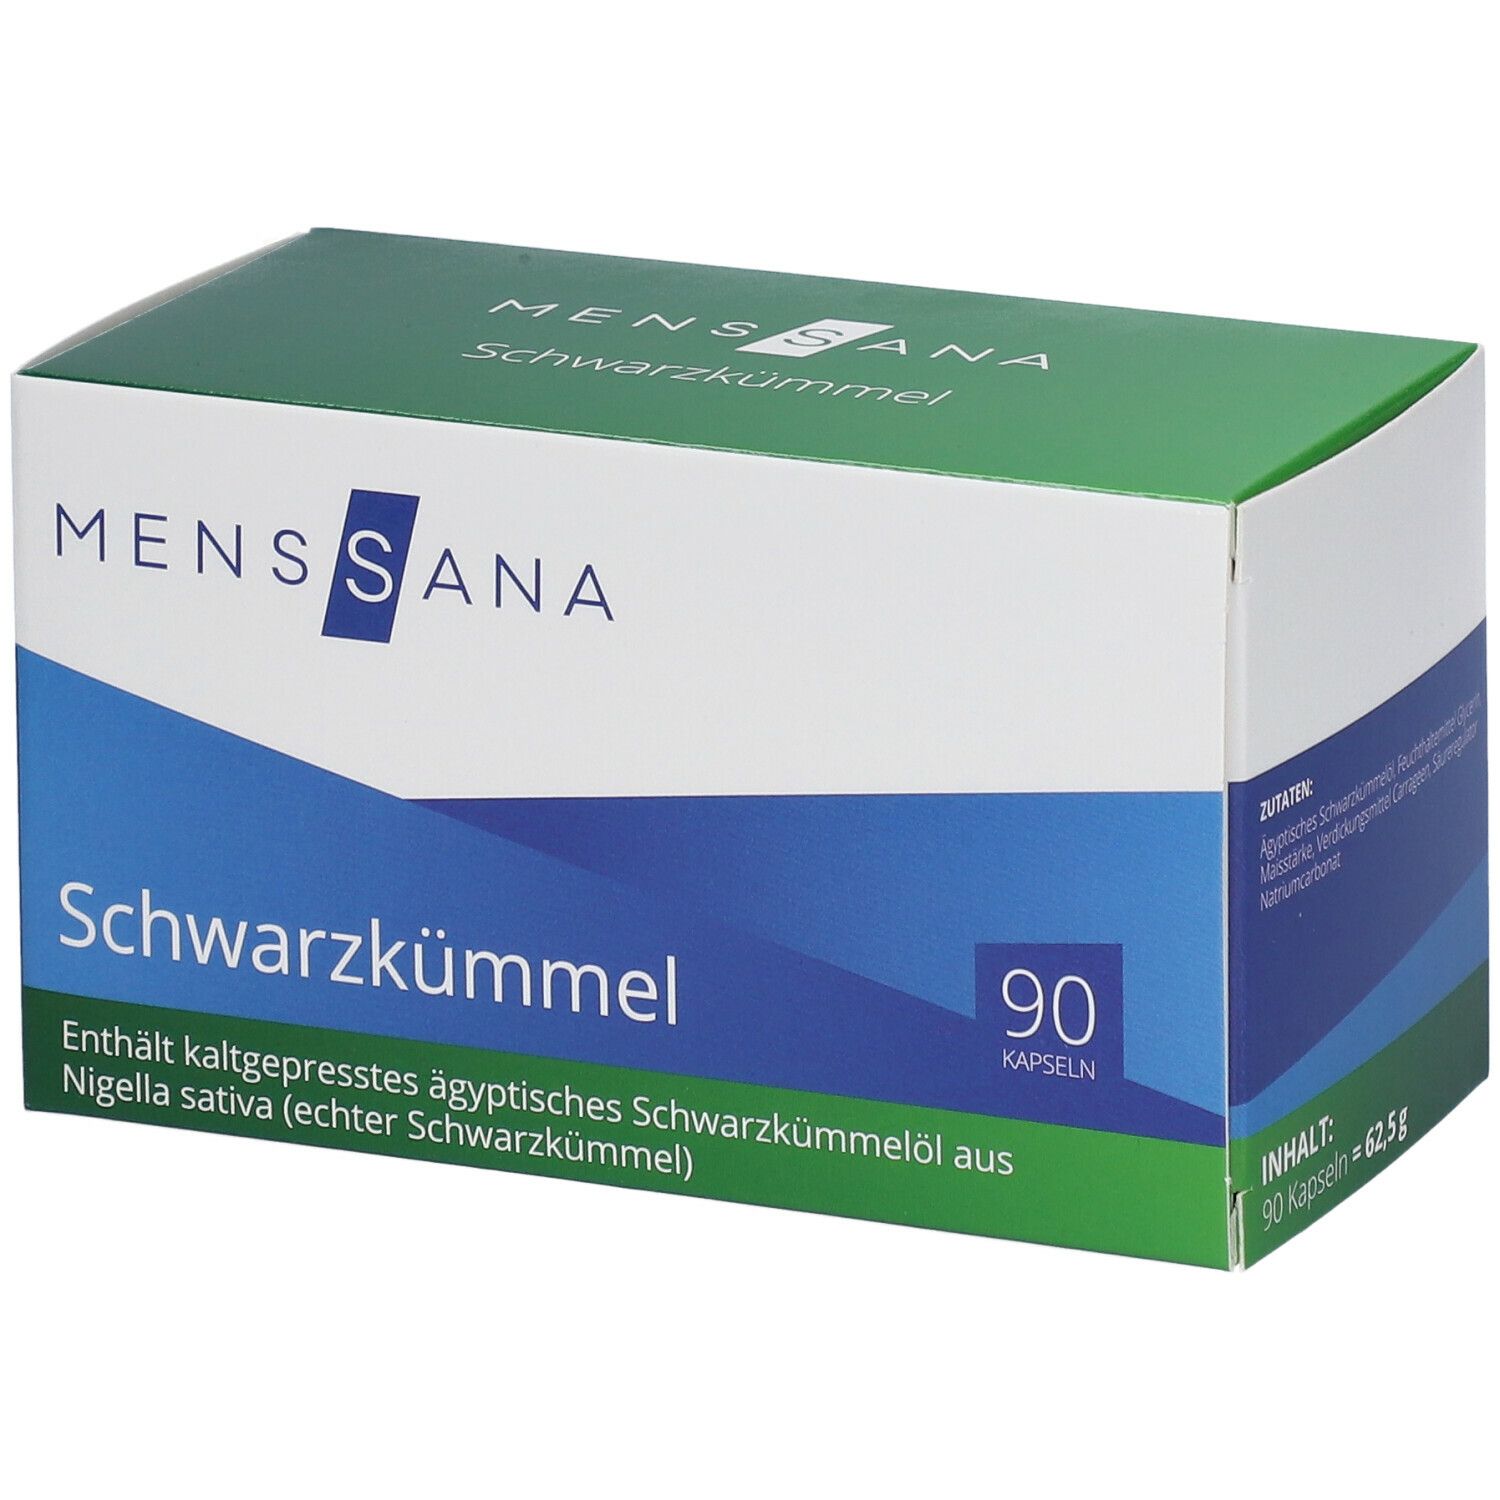 Image of MensSana Schwarzkümmel